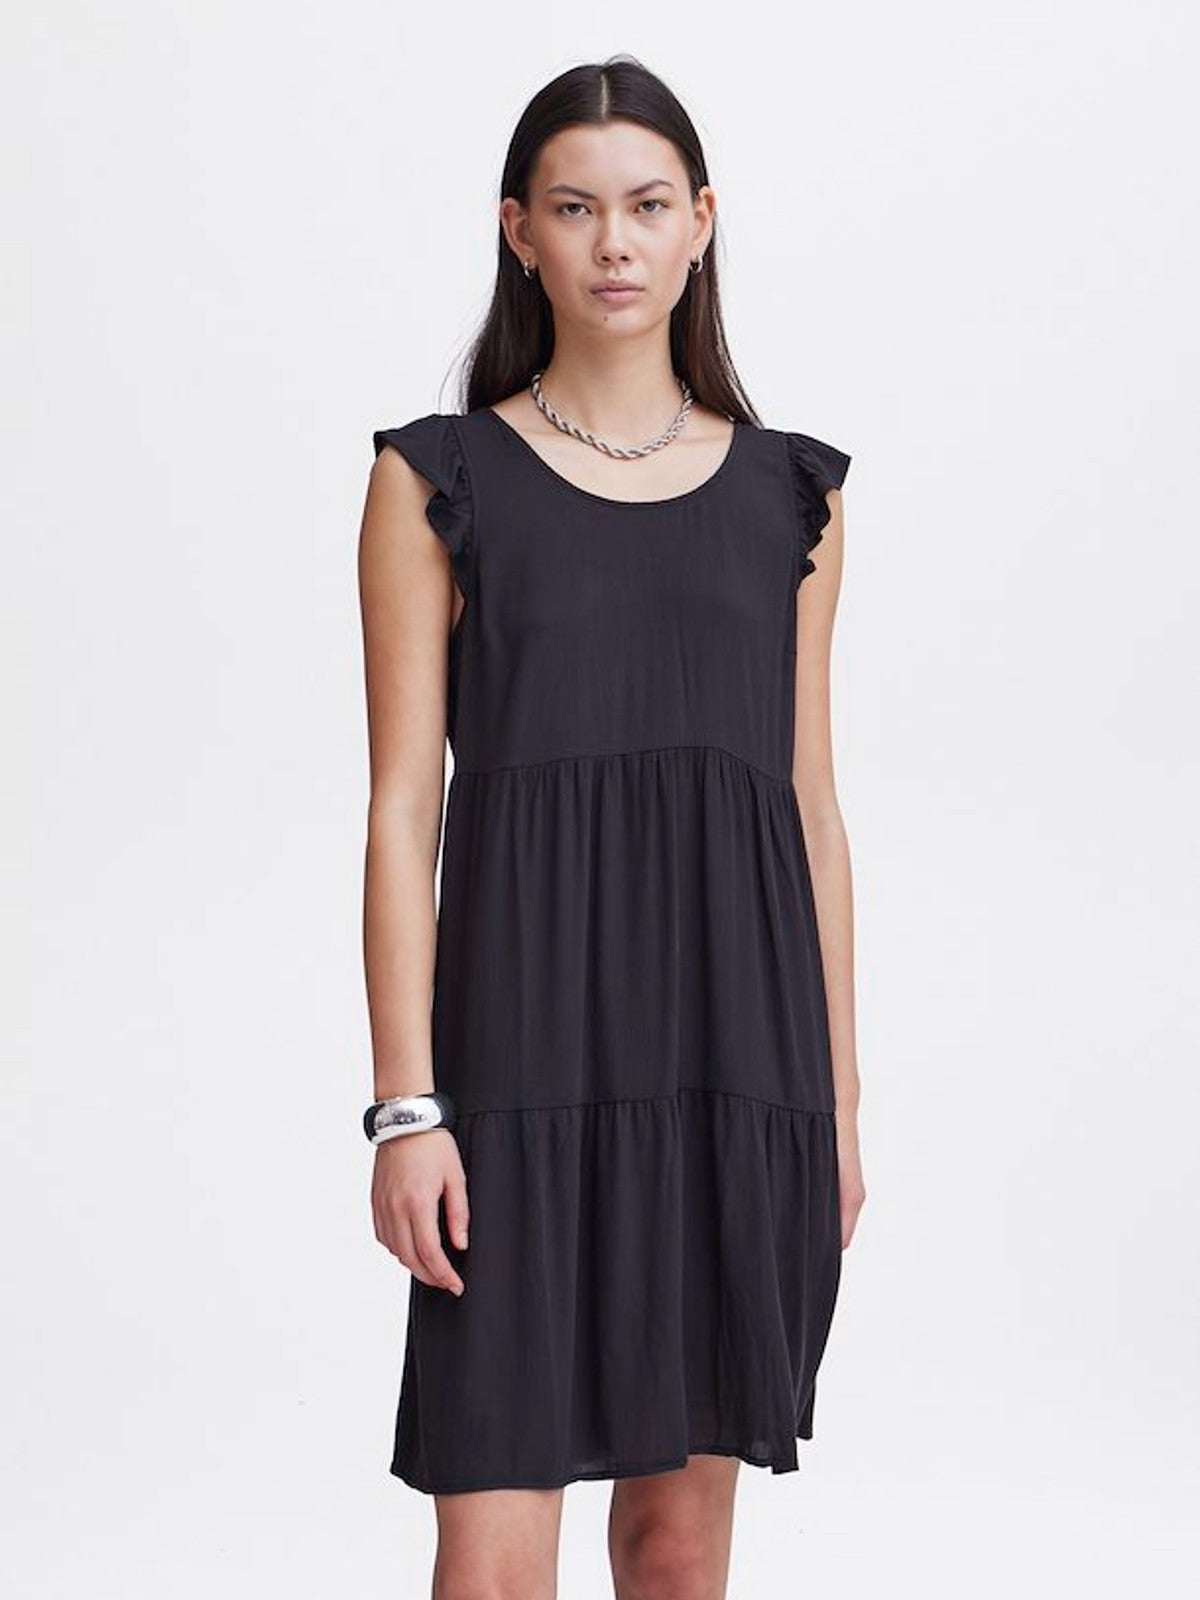 Marrakech Black Sleeveless Dress